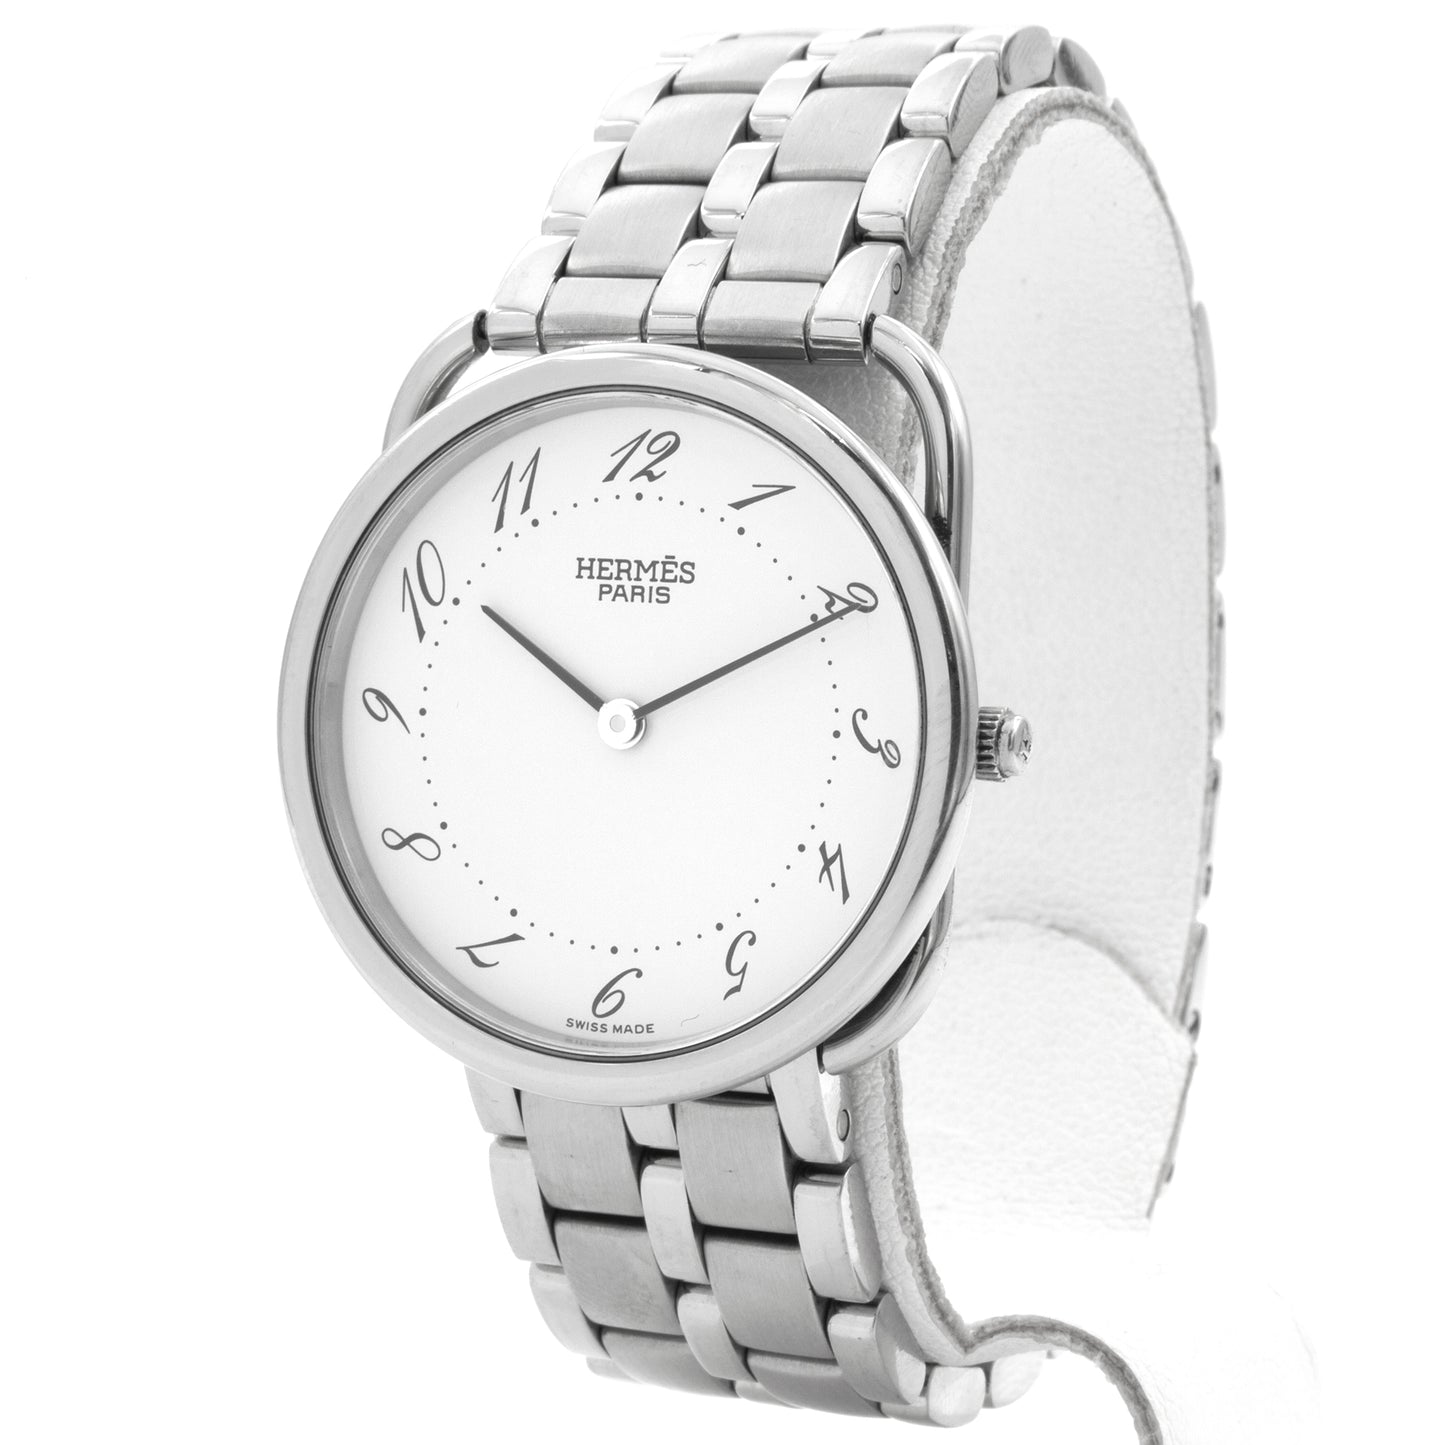 Hermès Arceau 30mm AR4.510 watch